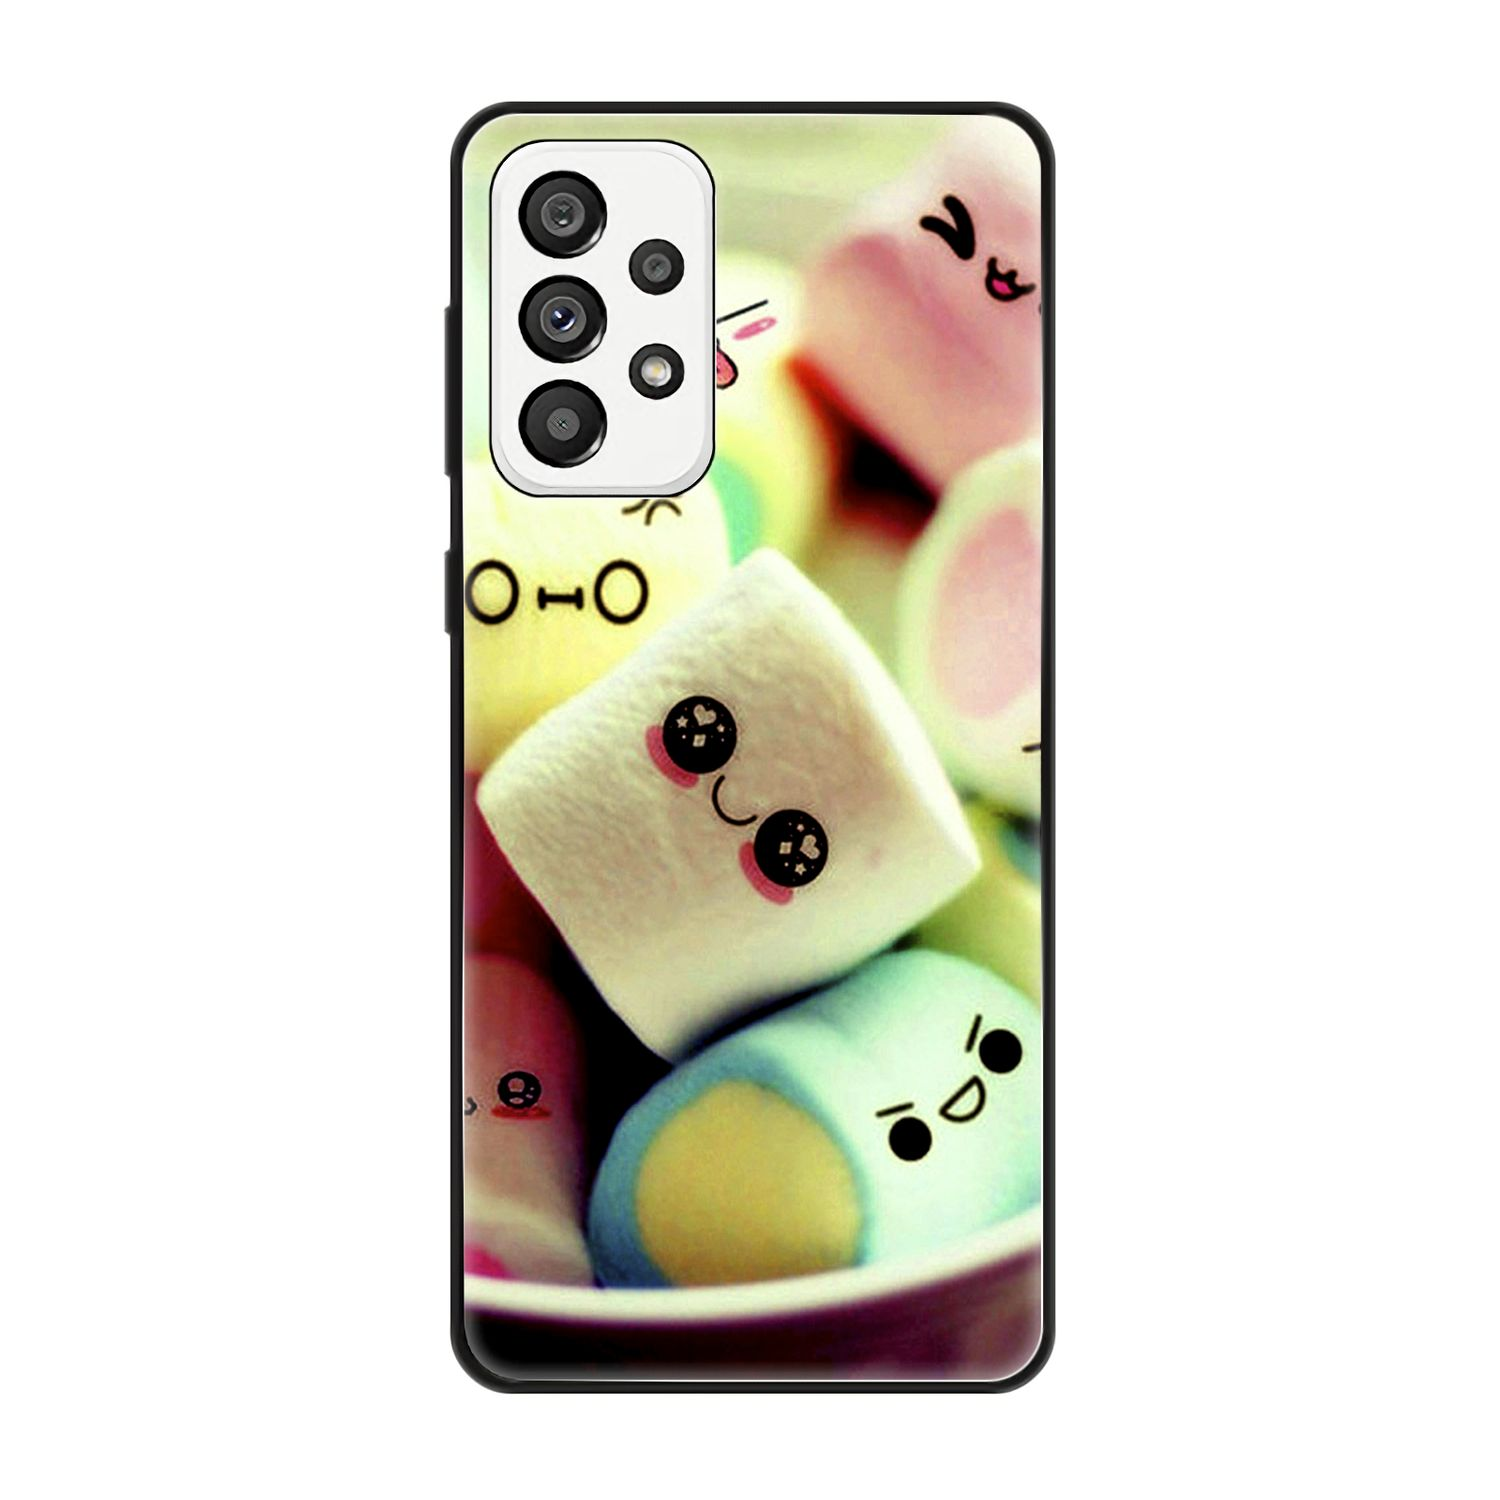 Backcover, 5G, KÖNIG Galaxy A73 Case, Samsung, Marshmallows DESIGN